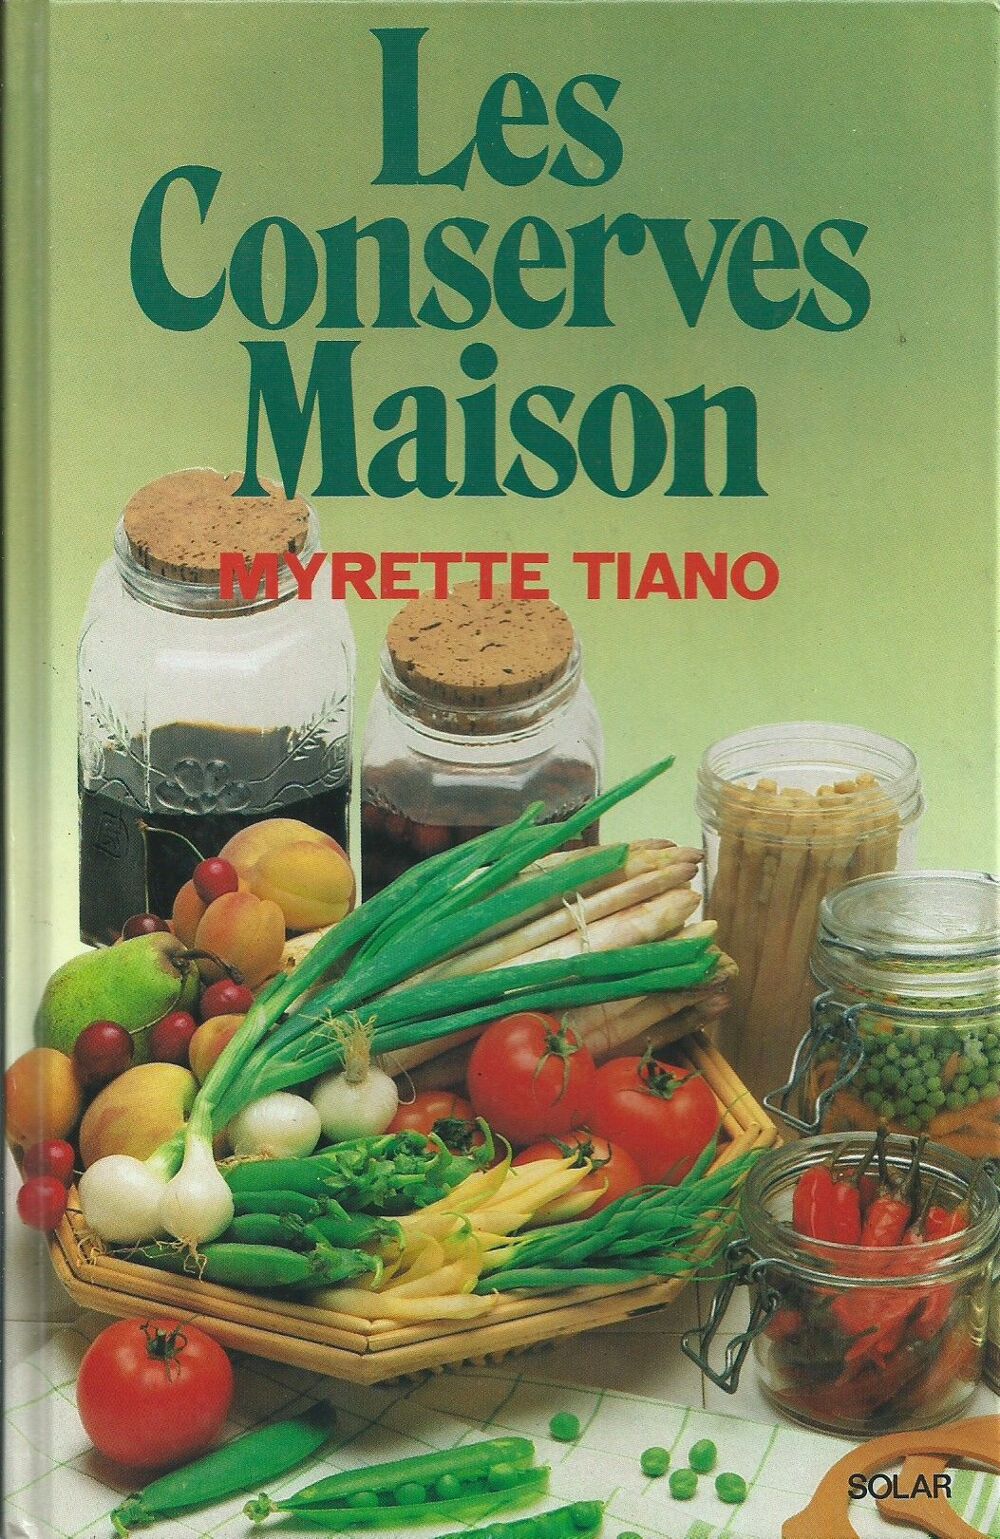 
1 livre de cuisine , les conserves maisons de myrette tiano Livres et BD